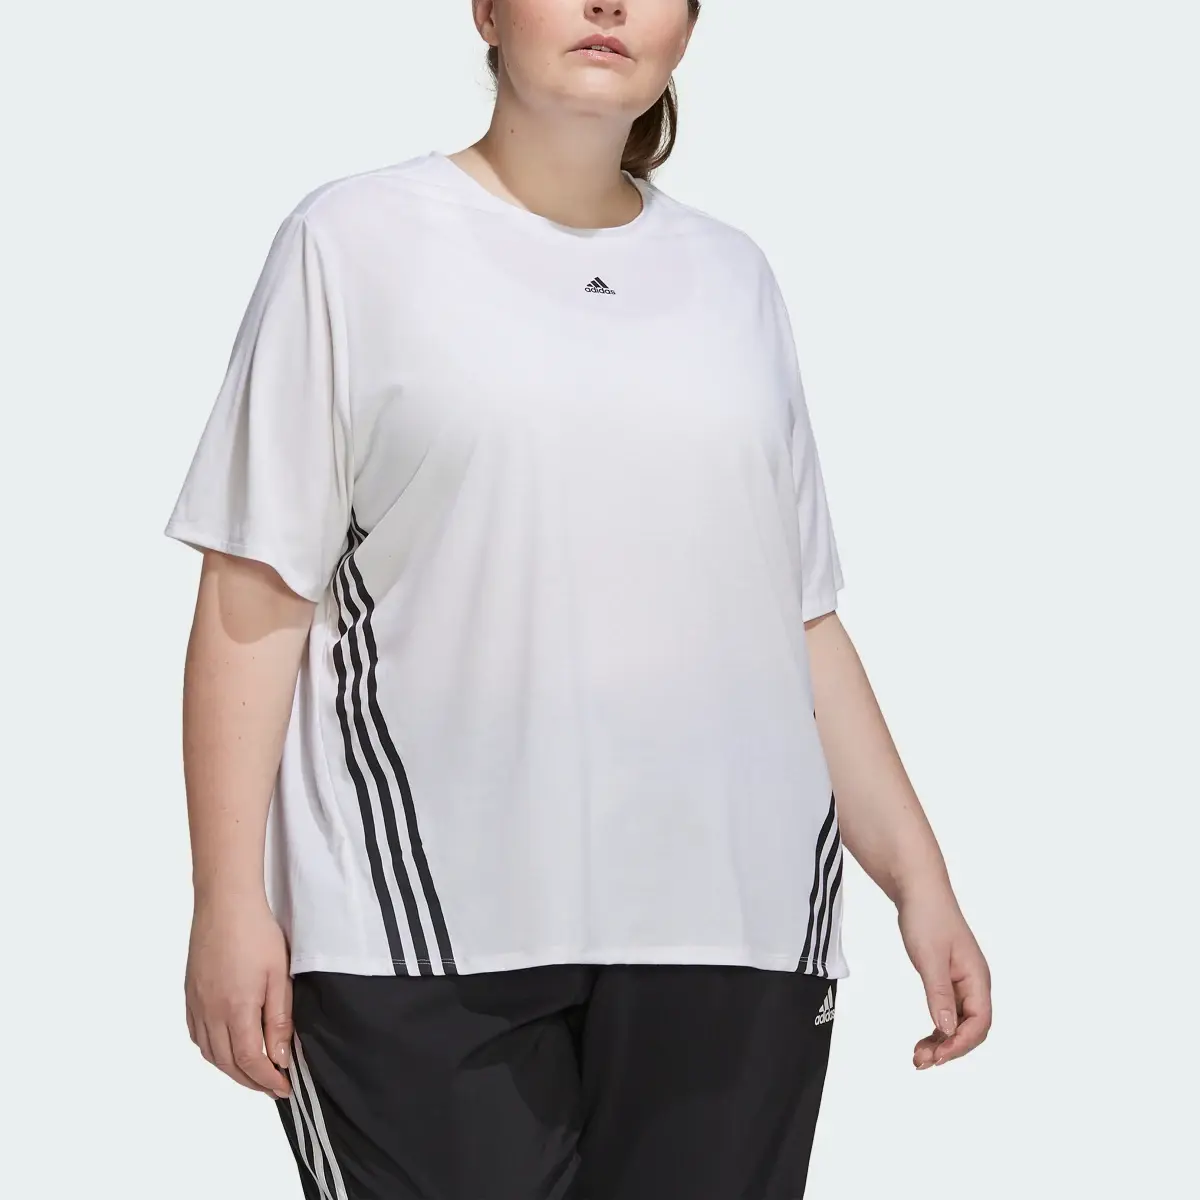 Adidas T-shirt Train Icons 3-Stripes (Curvy). 1